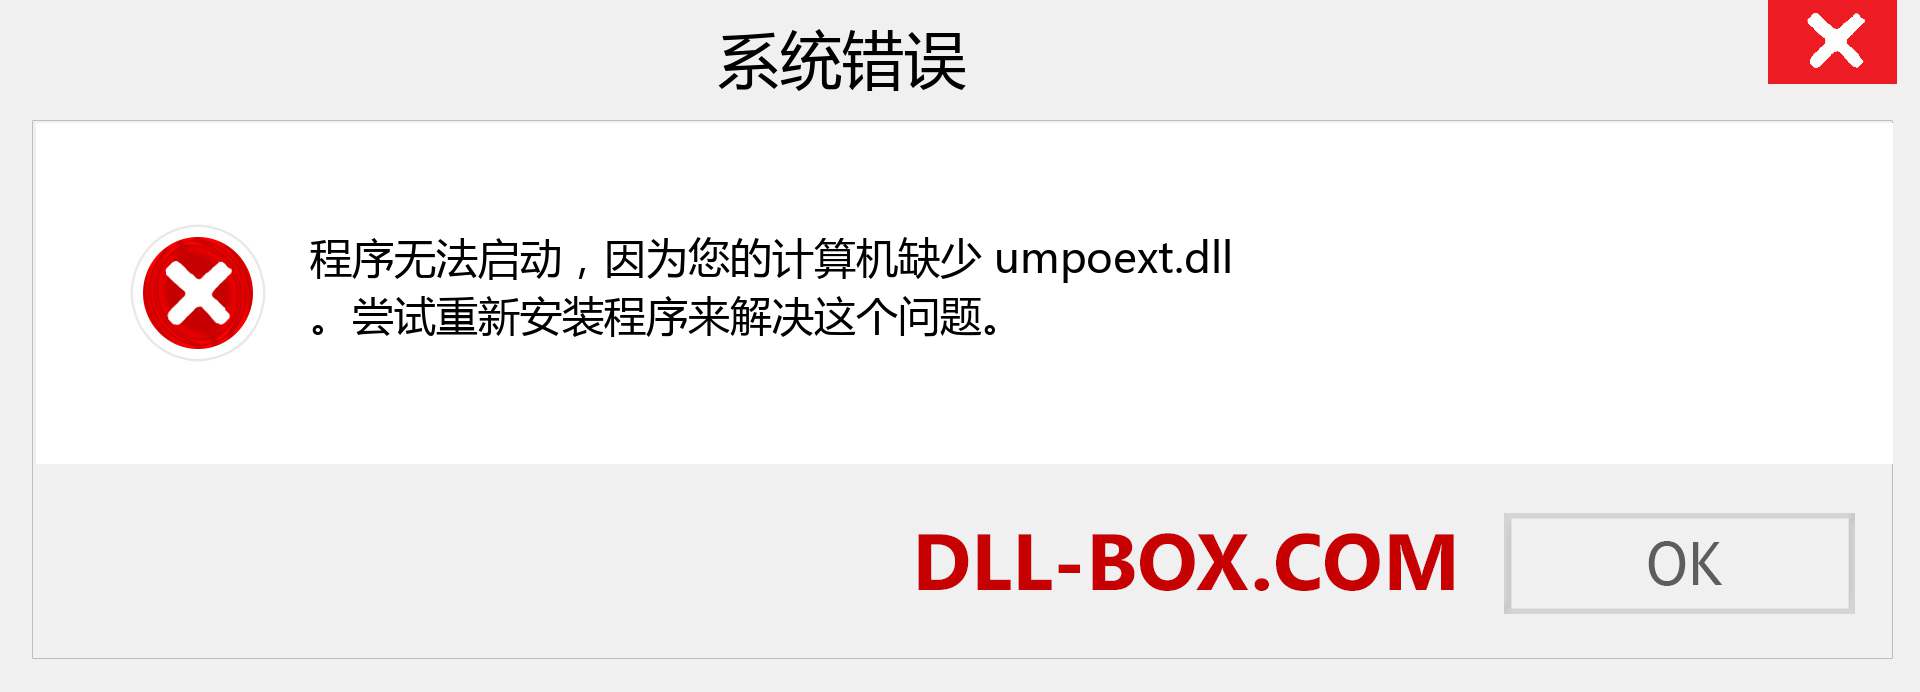 umpoext.dll 文件丢失？。 适用于 Windows 7、8、10 的下载 - 修复 Windows、照片、图像上的 umpoext dll 丢失错误